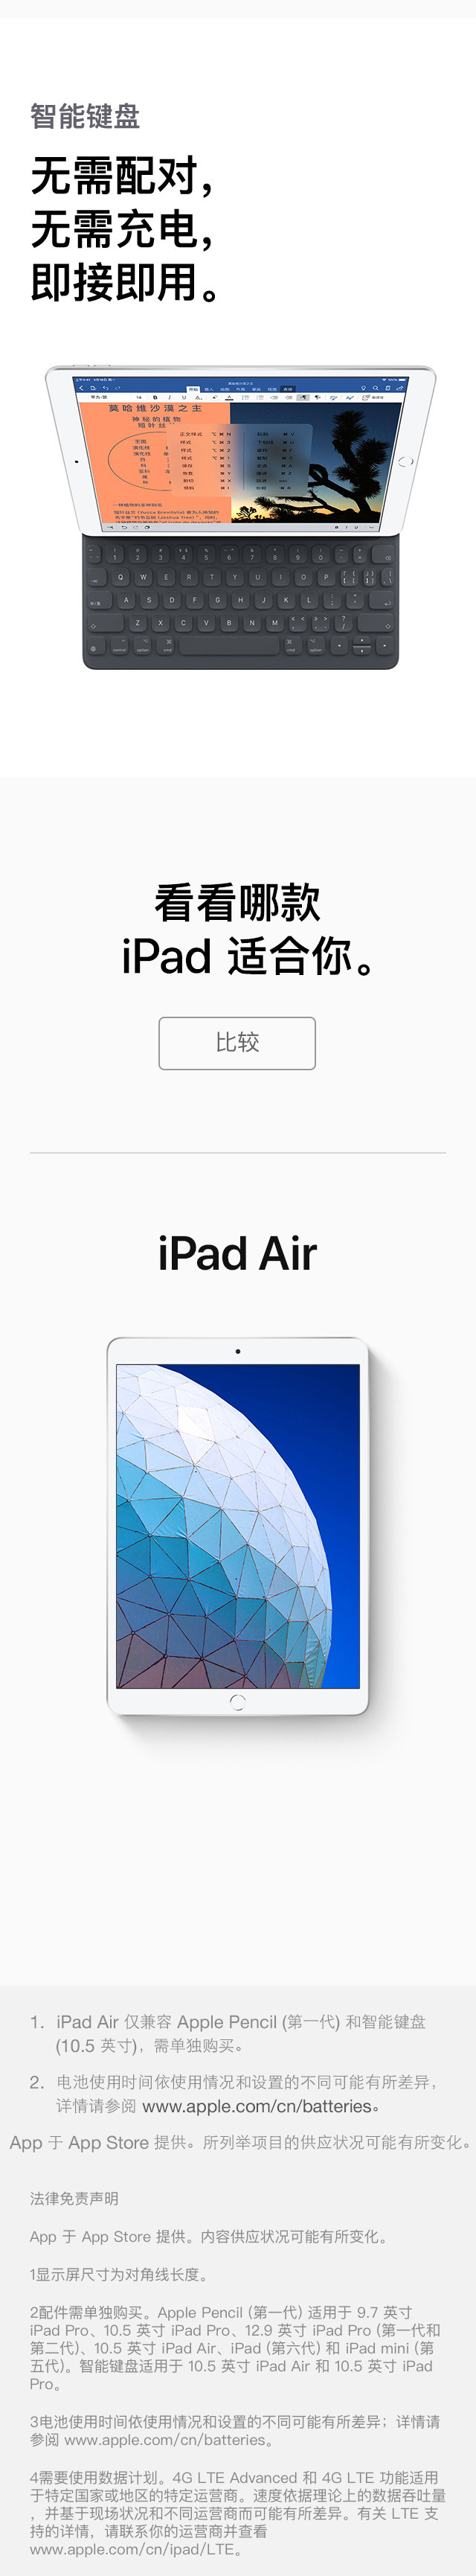 苹果/APPLE Apple iPad Air 3新款平板电脑 10.5英寸 64G WLAN版